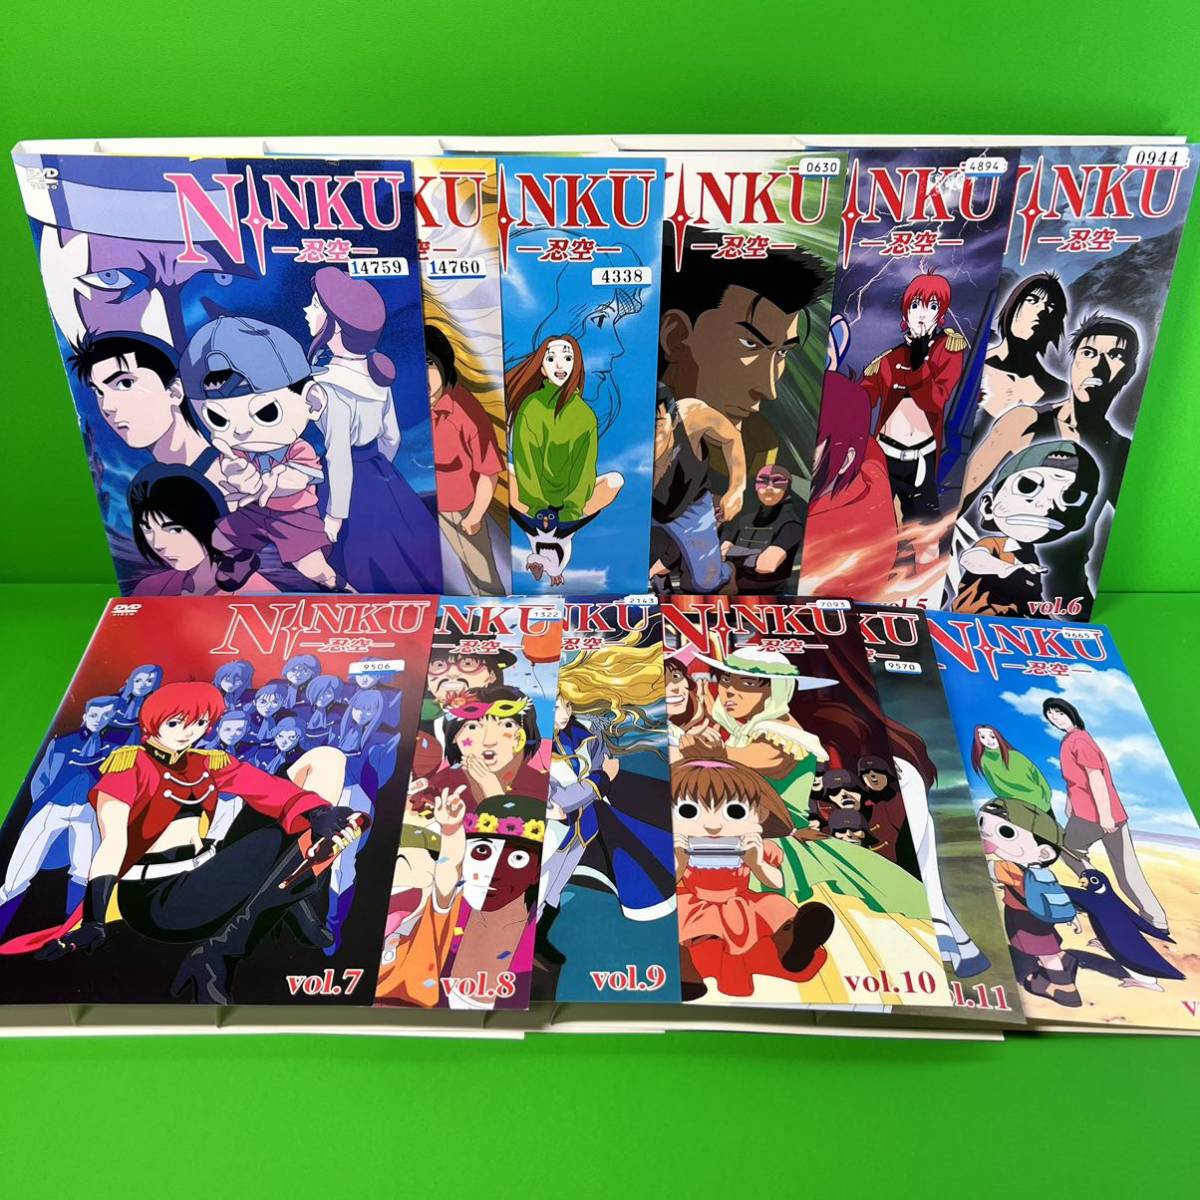 14850円 数量限定価格!! NINKU-忍空- Blu-ray BOX全2巻セット